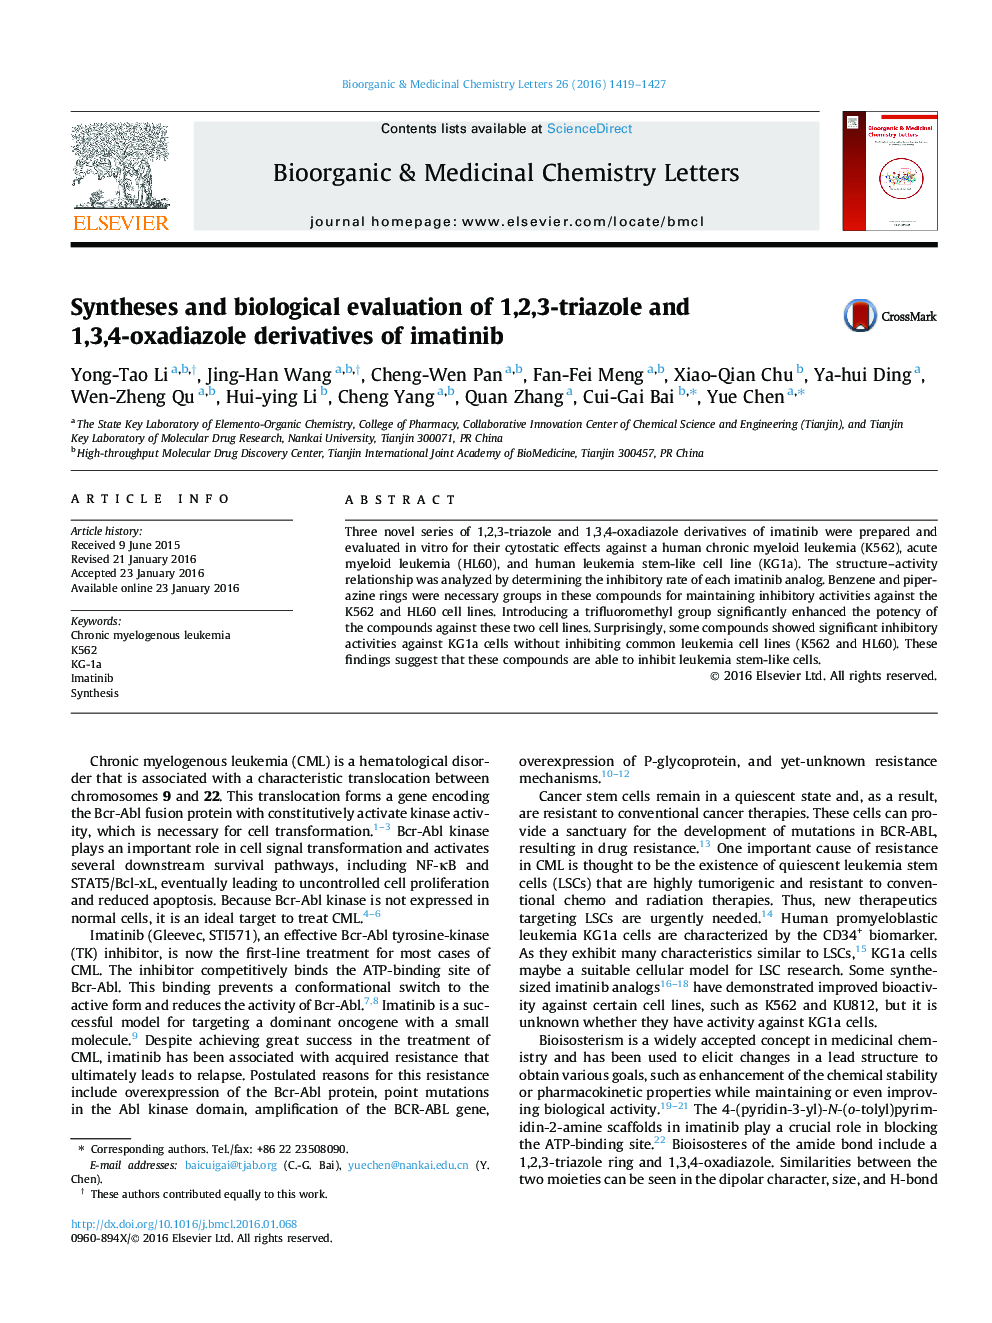 سنتز و ارزیابی بیولوژیکی متیلهای 1،2،3-تریاازول و 1،3،4-اکسیداازول ایاتینیب 